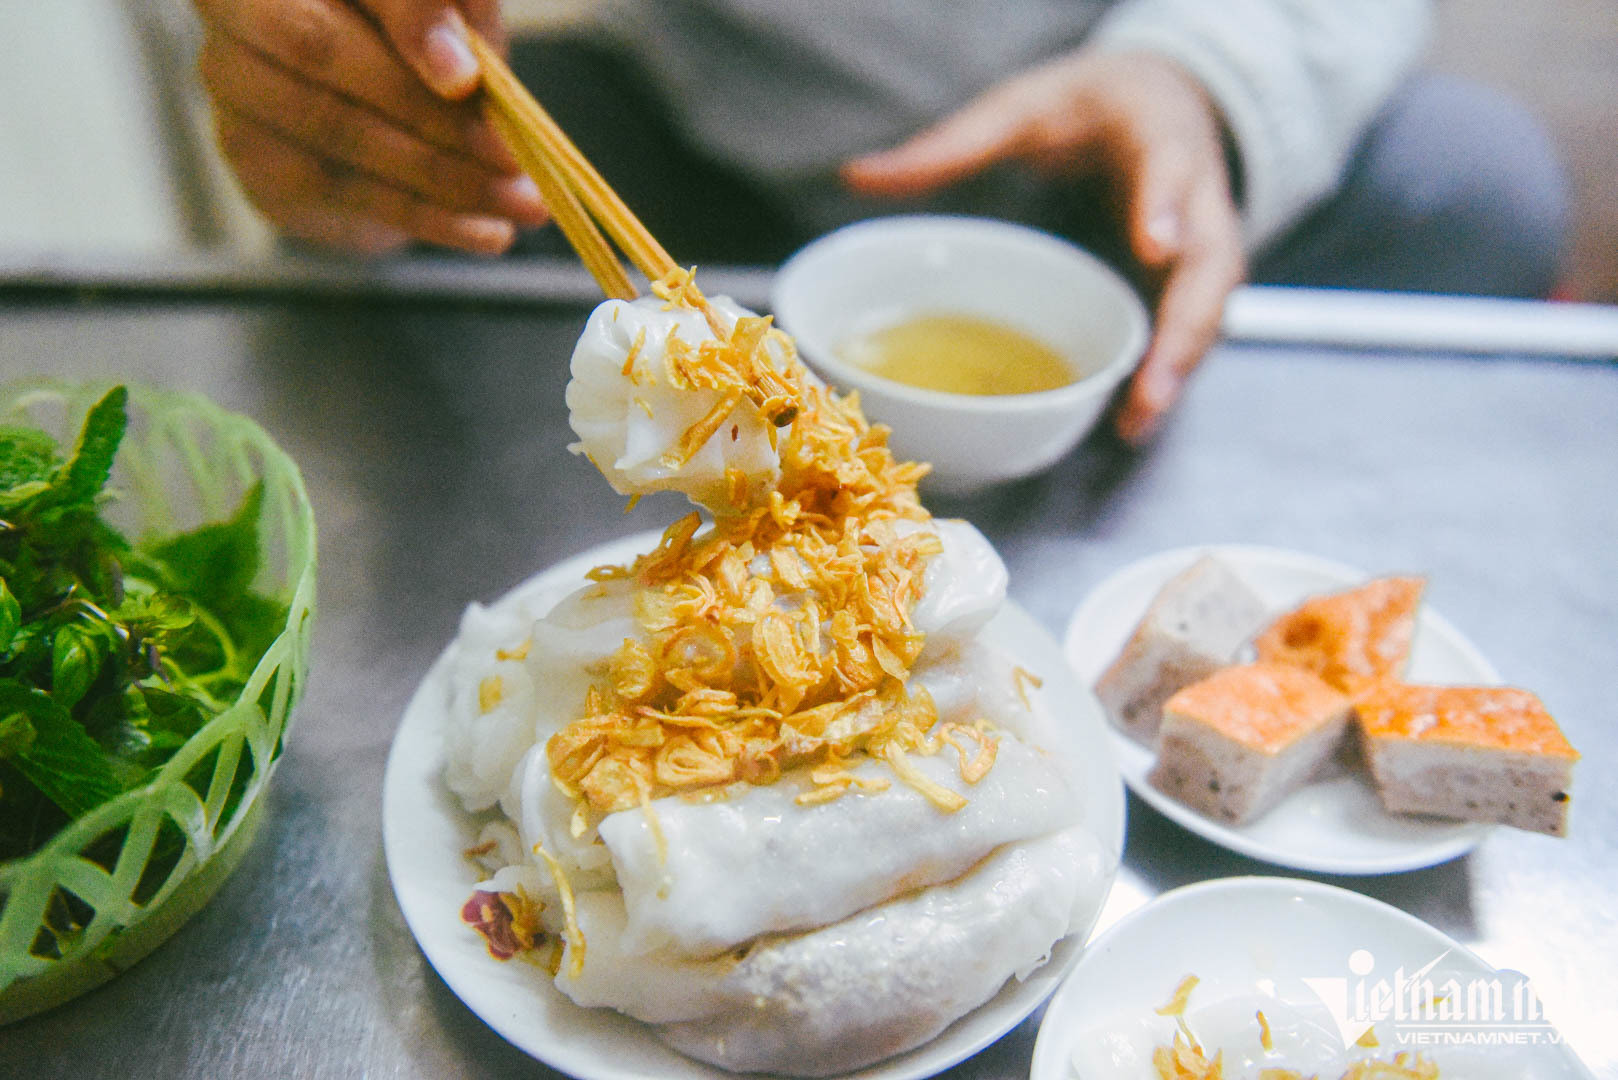 Báo Tây phân biệt sự khác nhau giữa ẩm thực Nam – Bắc Việt Nam - Ảnh 4.